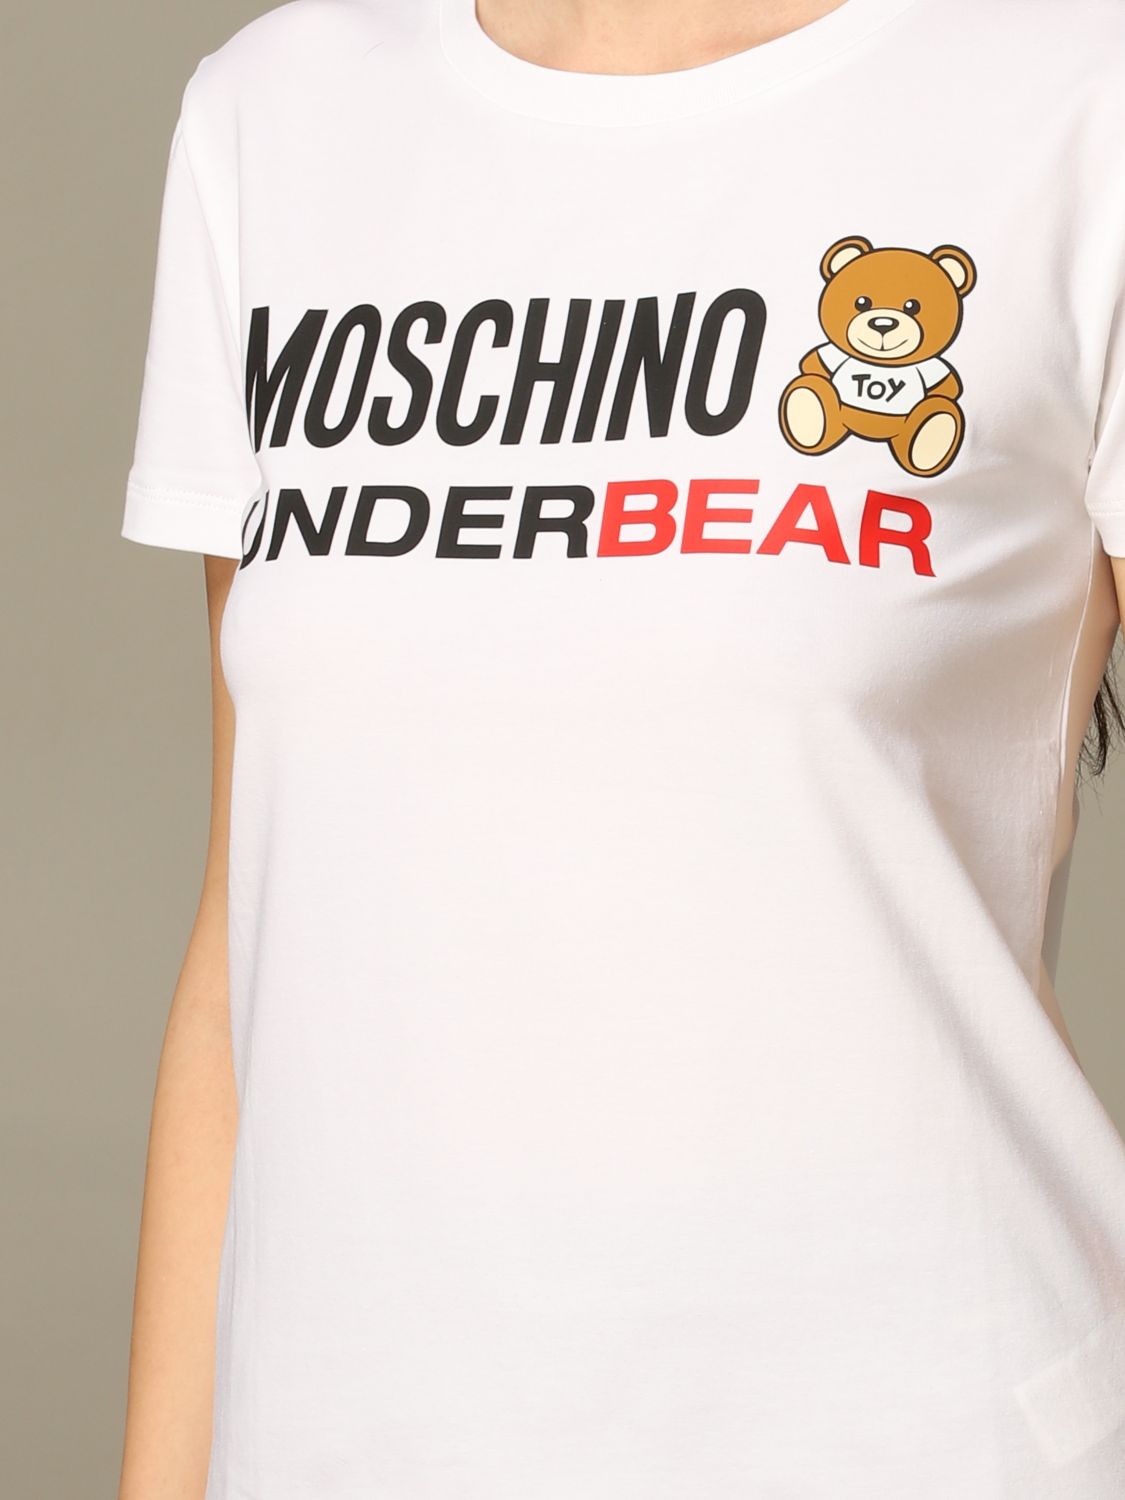 Moschino Underwear Outlet: T-shirt women | T-Shirt Moschino Underwear ...